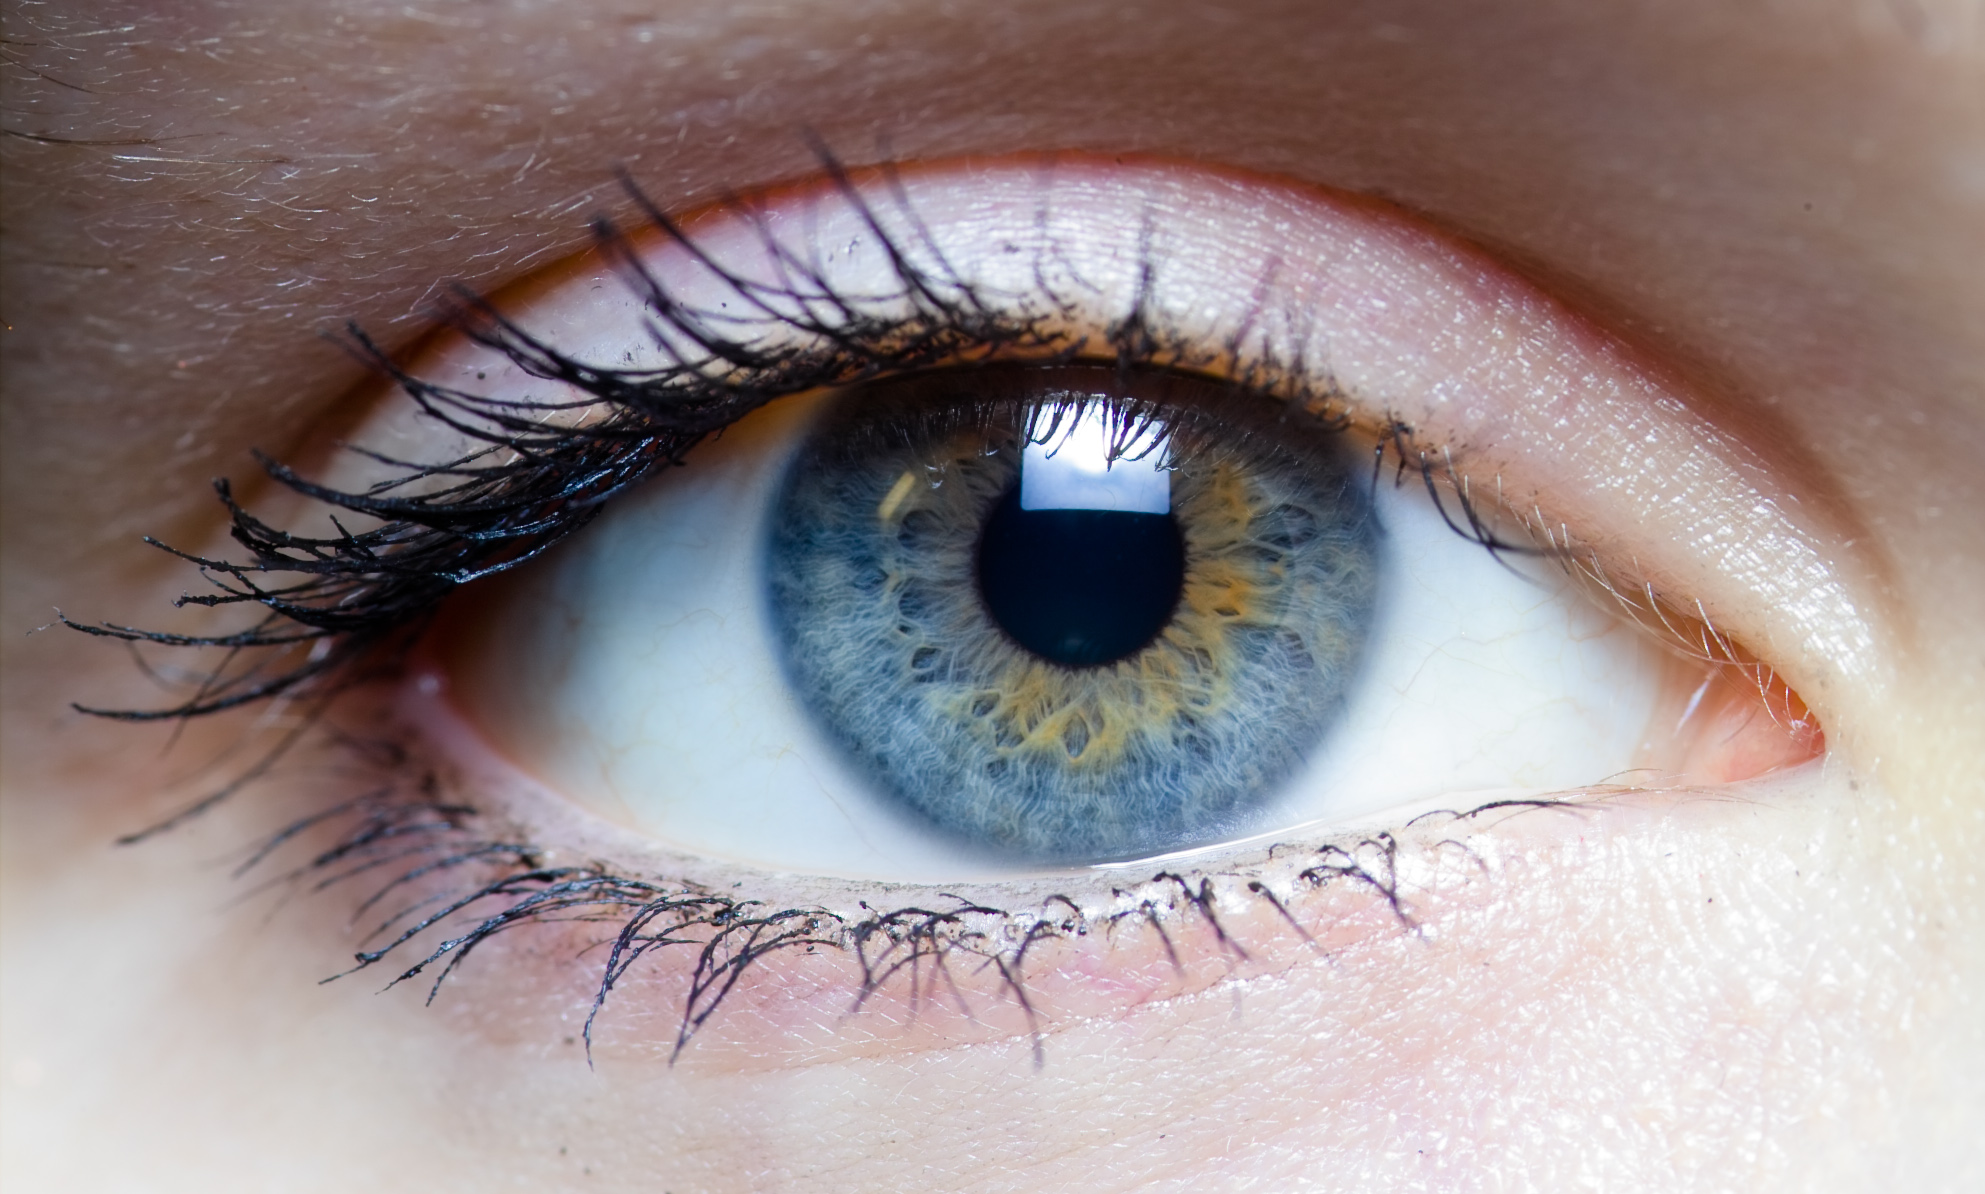 File:Iris - left eye of a girl.jpg - Wikimedia Commons